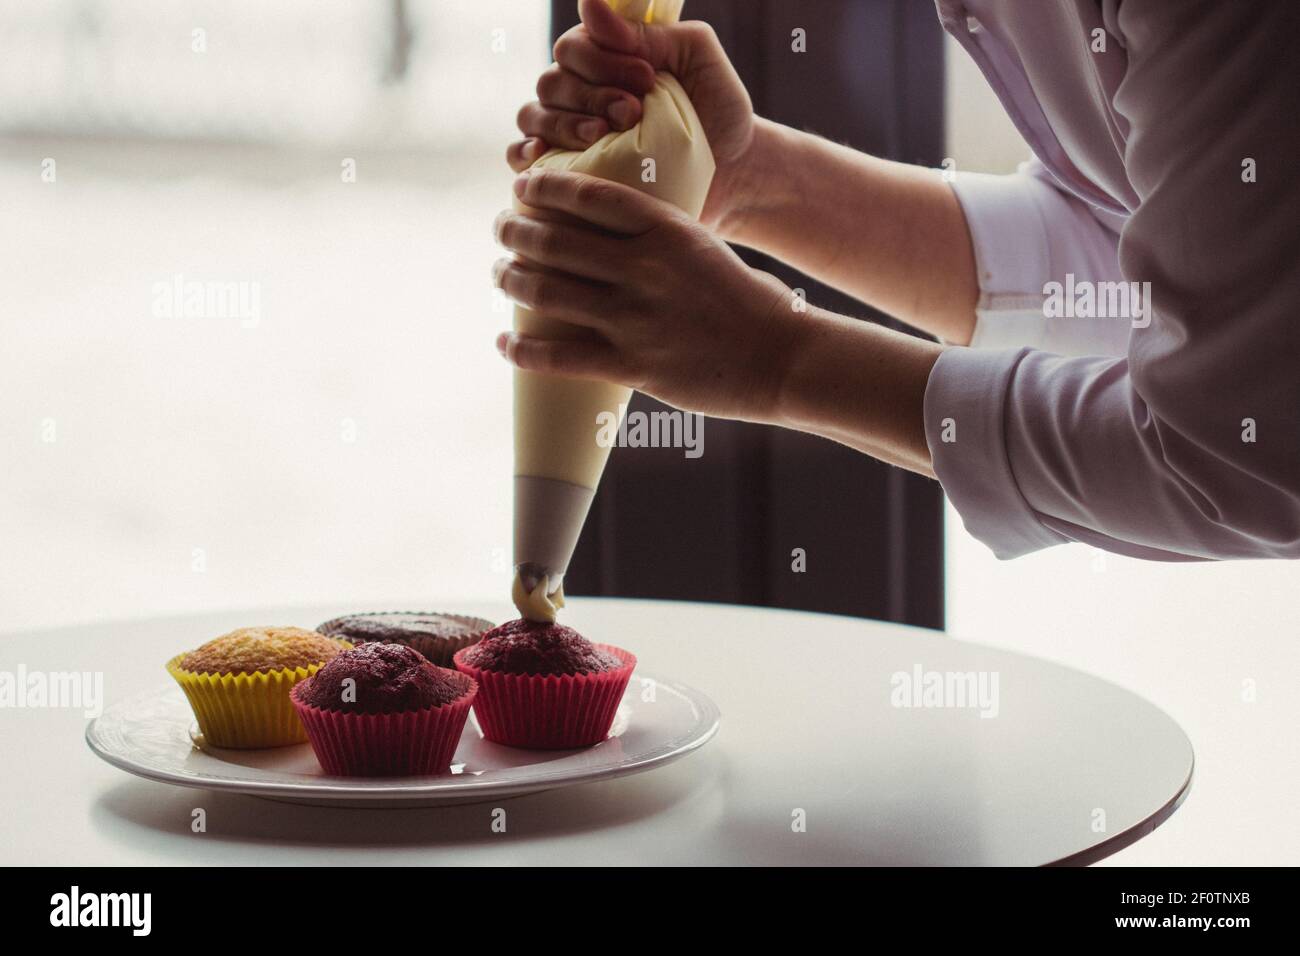 Un cupcake es un pequeño pastel diseñado para servir a una persona, que  puede ser horneado en un pequeño papel delgado o una taza de aluminio. Al  igual que con las tortas